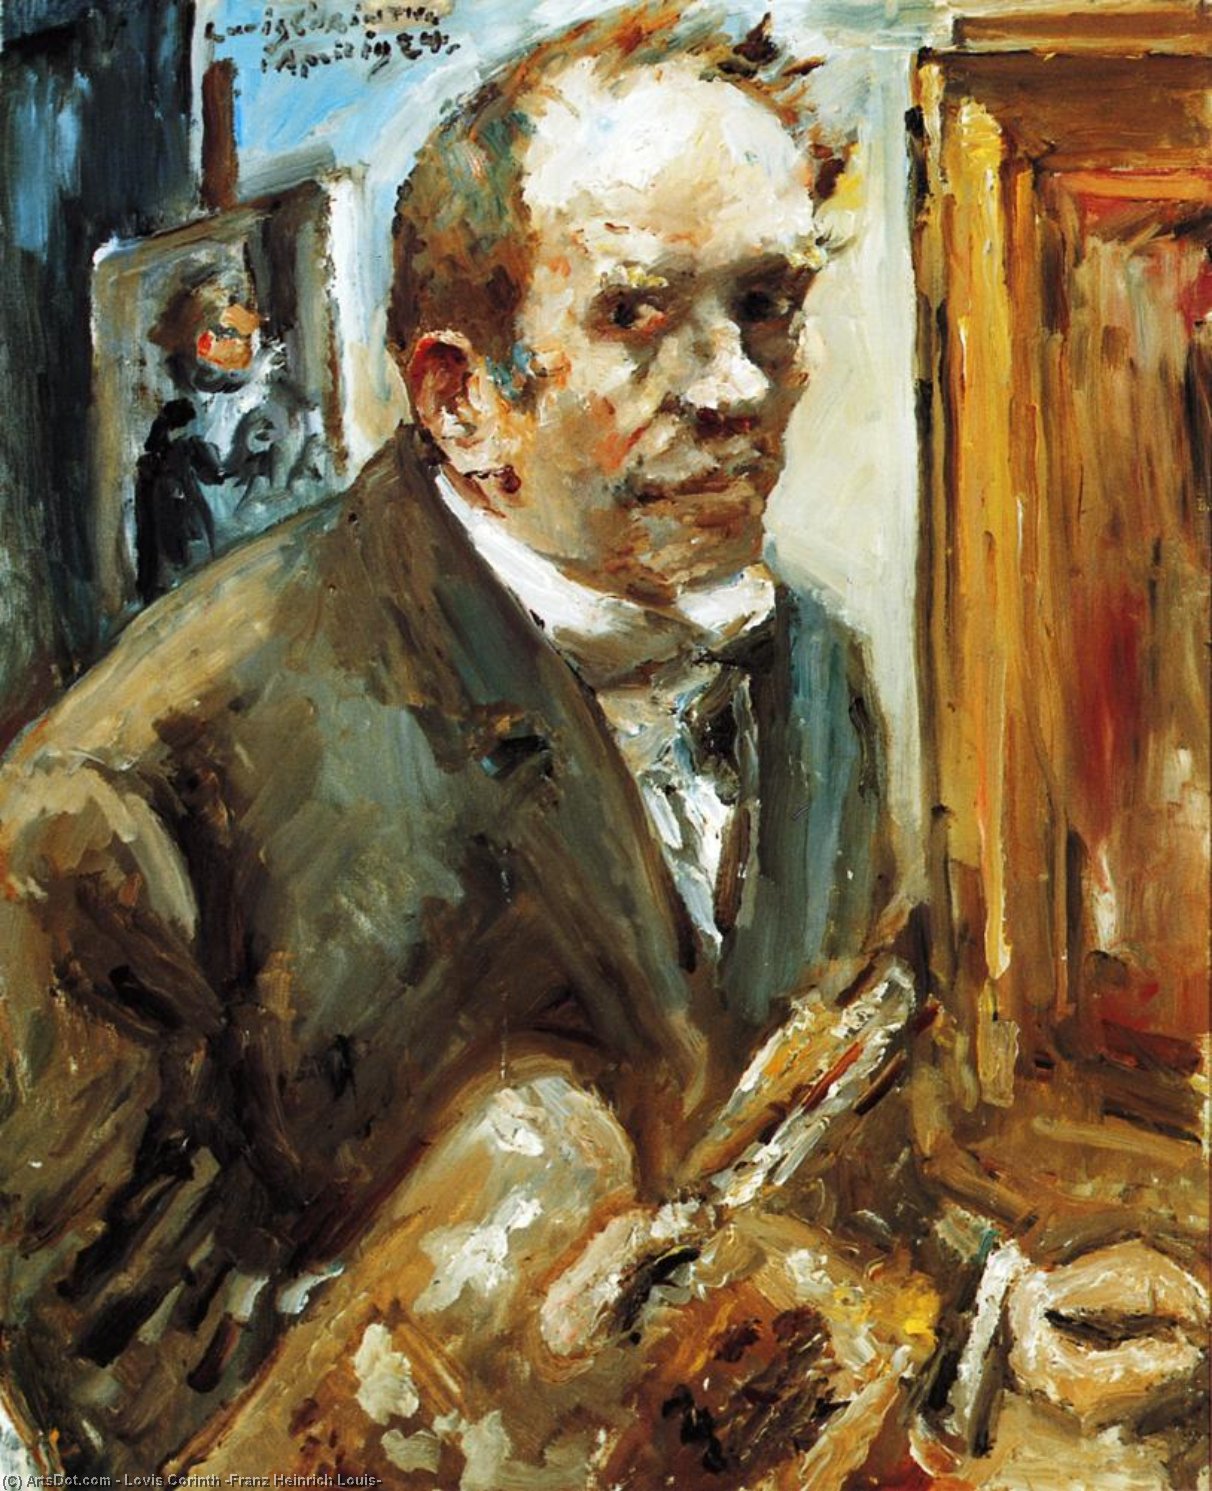 Wikoo.org - موسوعة الفنون الجميلة - اللوحة، العمل الفني Lovis Corinth (Franz Heinrich Louis) - Self Portrait with Palette